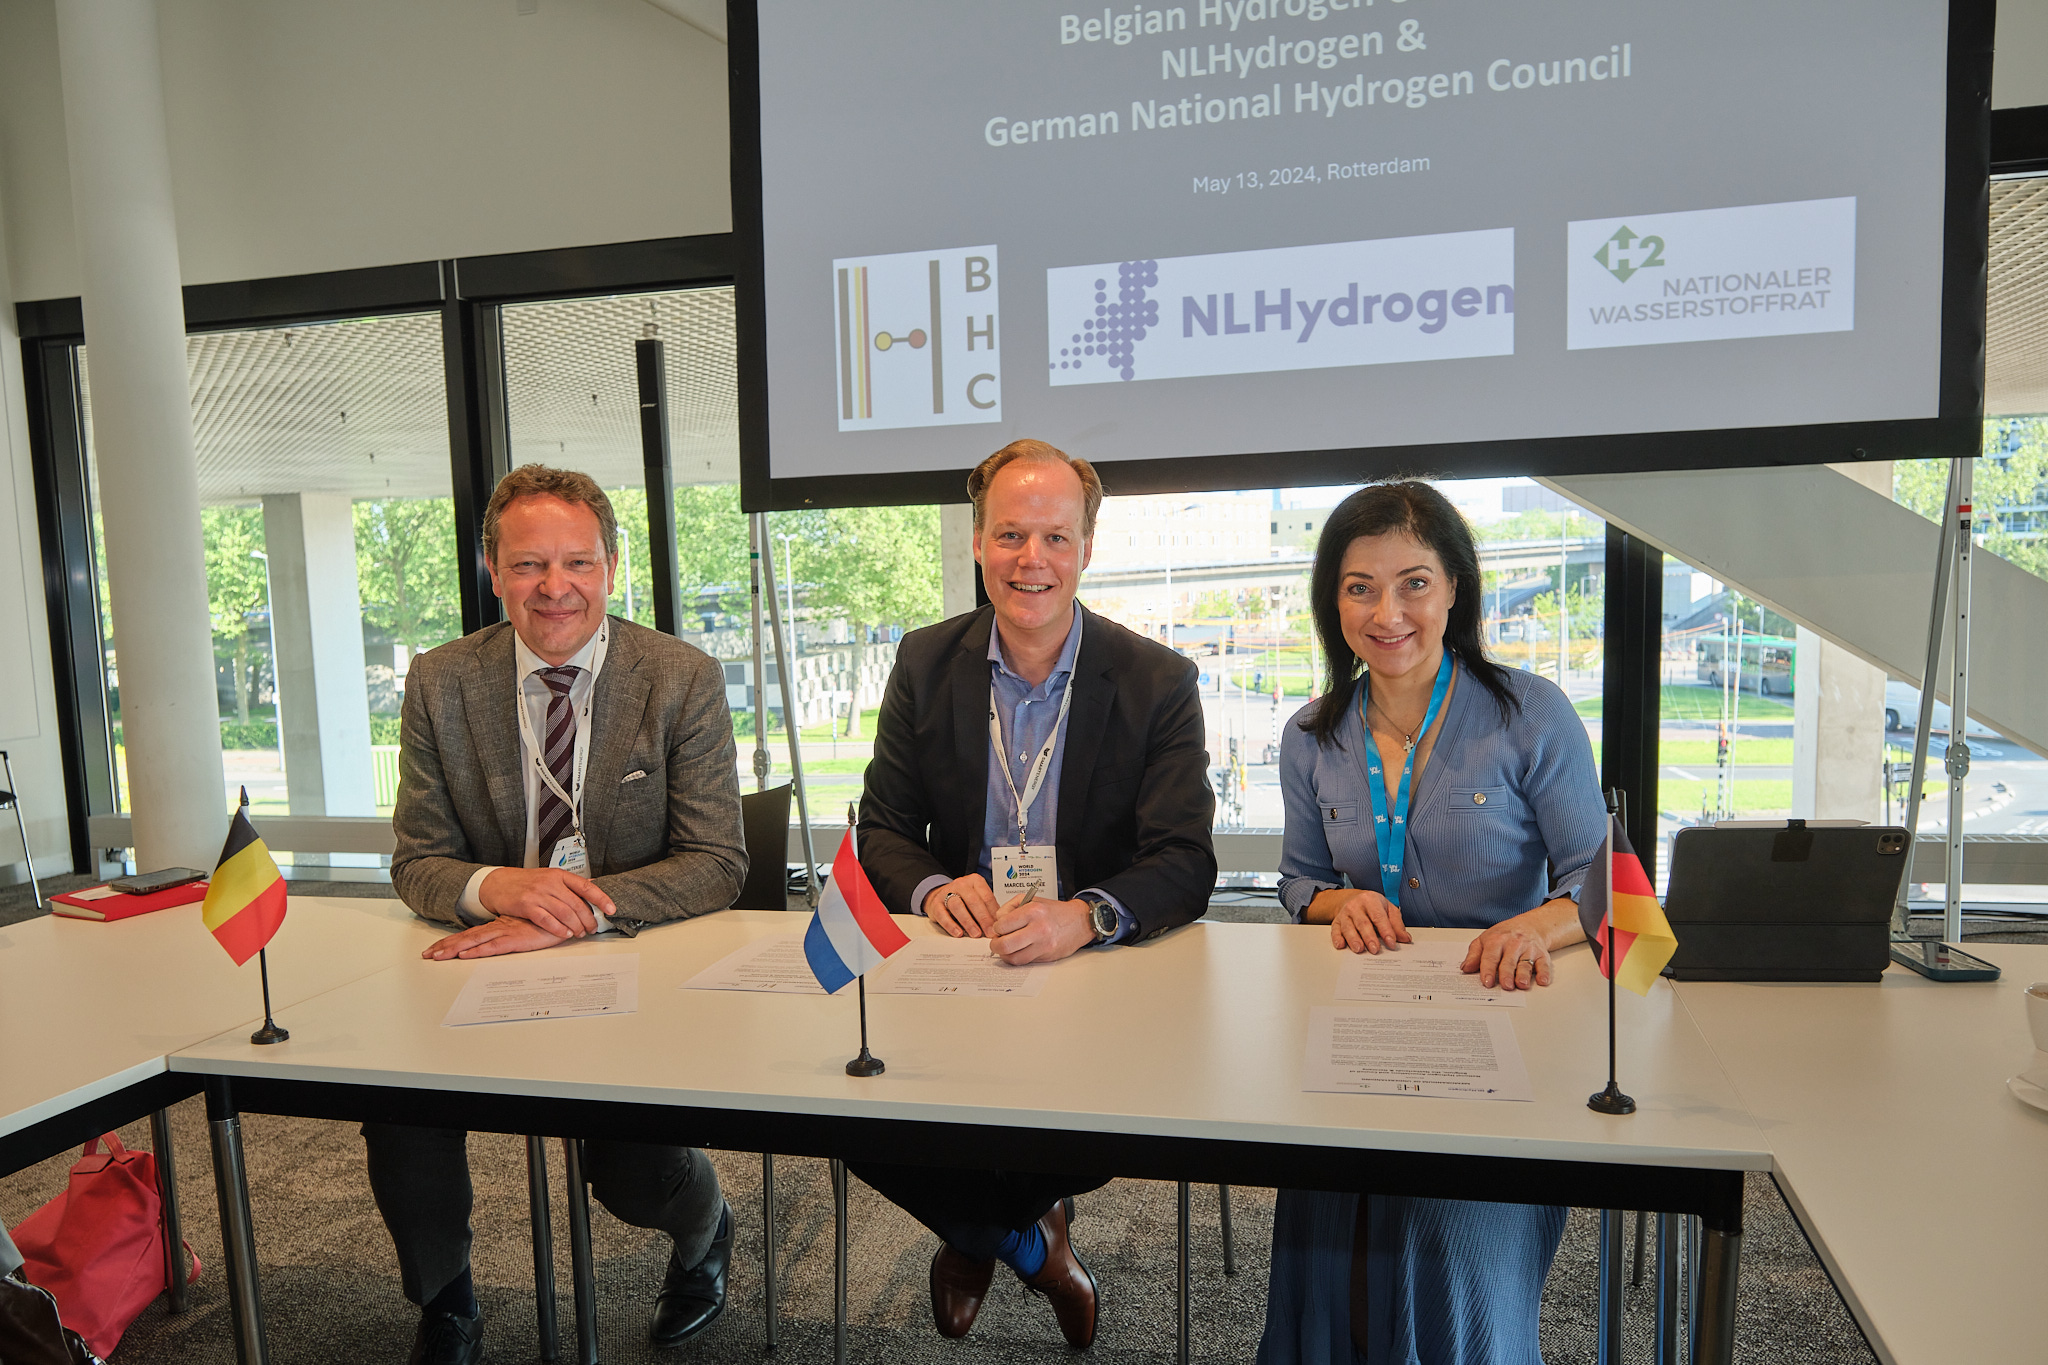 De Belgian Hydrogen Council, NLHydrogen en de Duitse Nationaler Wasserstoffrat ondertekenen een MOU om de waterstofeconomie in Europa te stimuleren. 